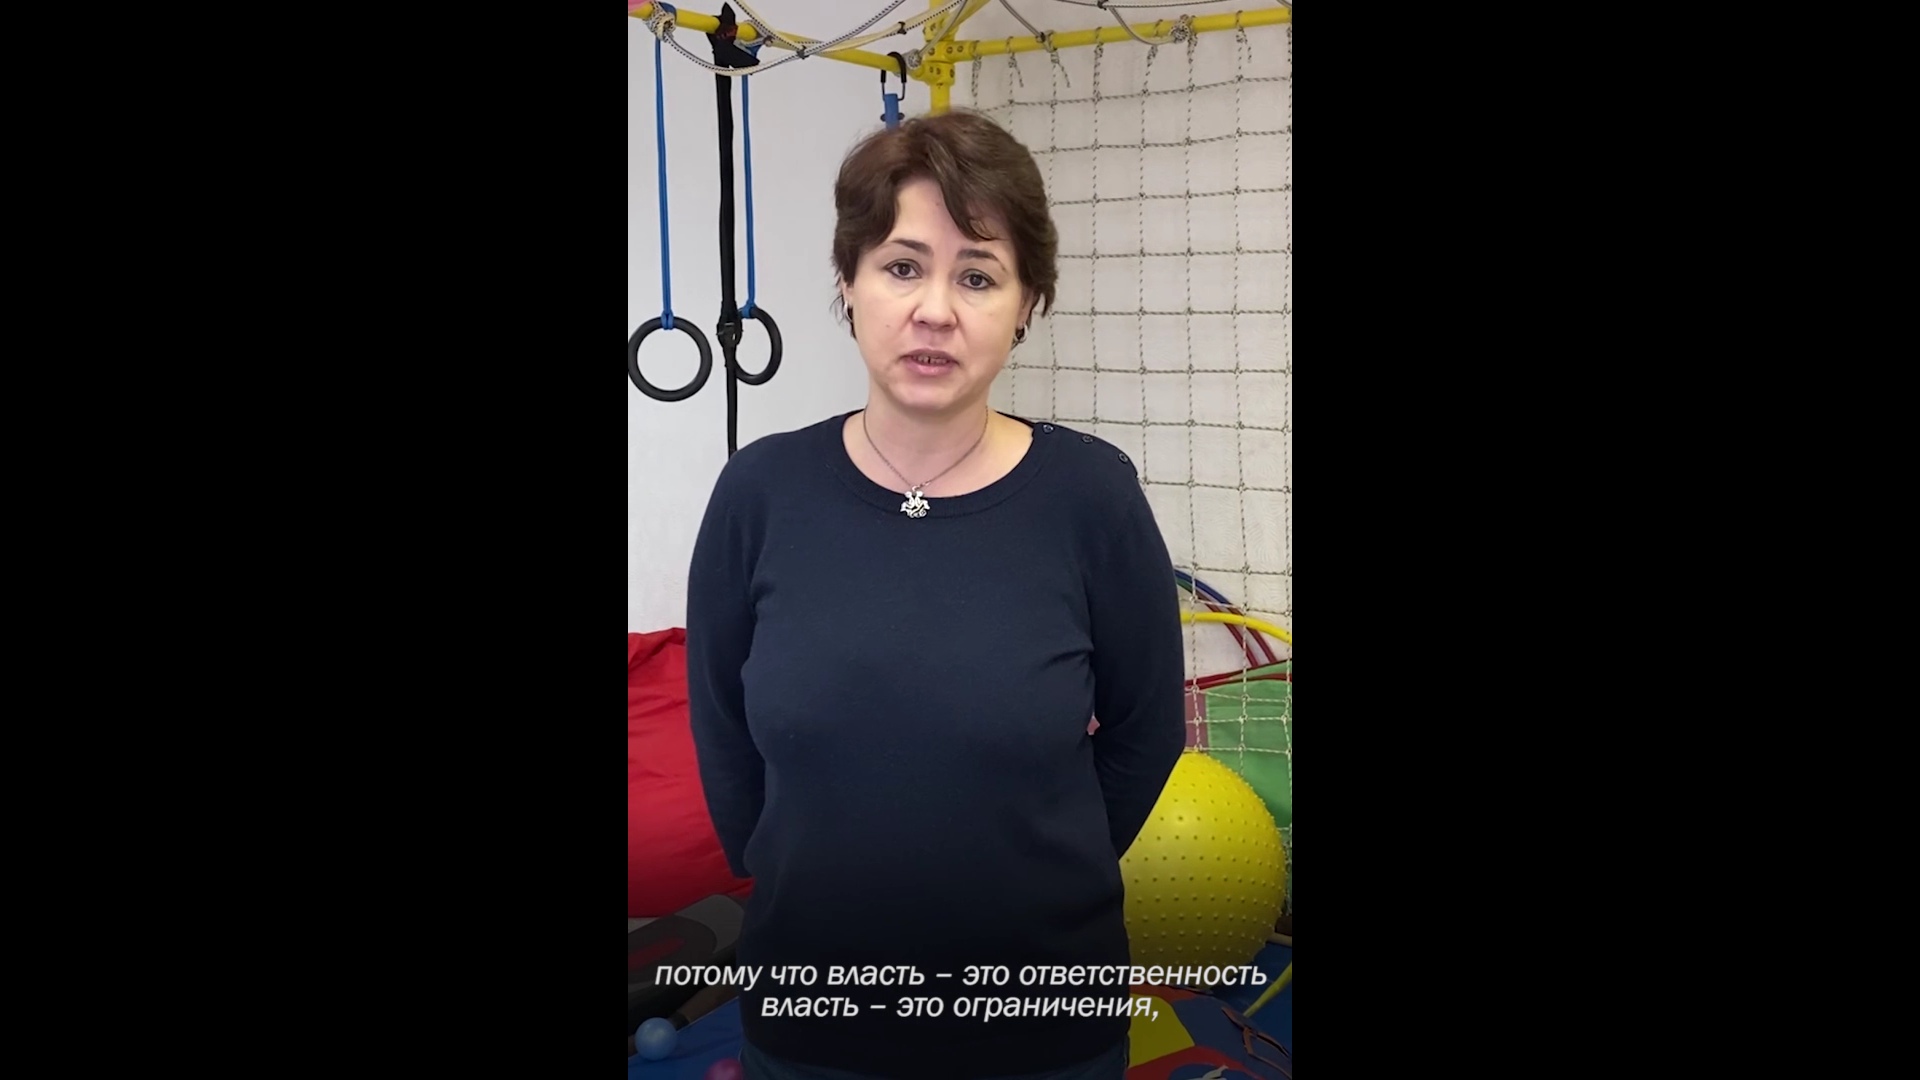 Координатор сообщества родителей детей с аутизмом Ярославской области рассказала об ответственности тех, кто говорит о власти